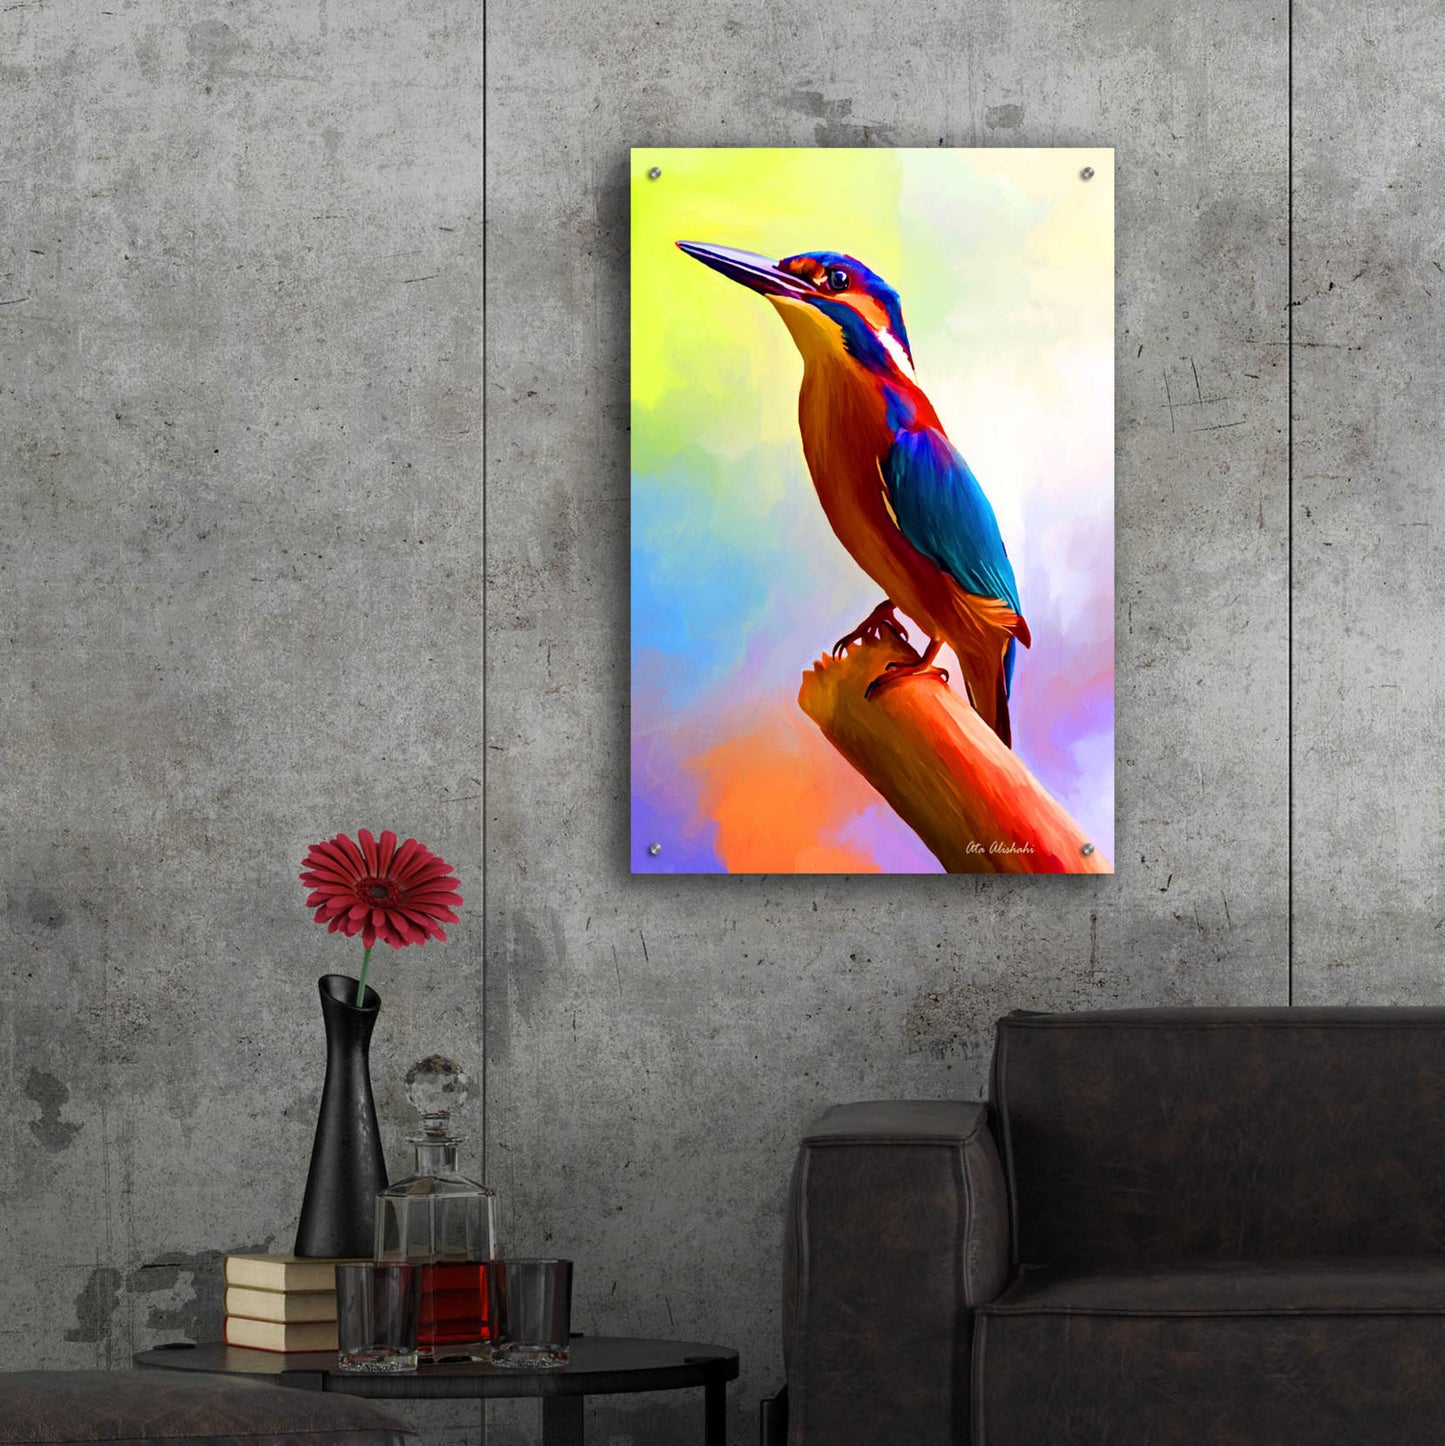 Epic Art 'Tiny Bird' by Ata Alishahi, Acrylic Glass Wall Art,24x36